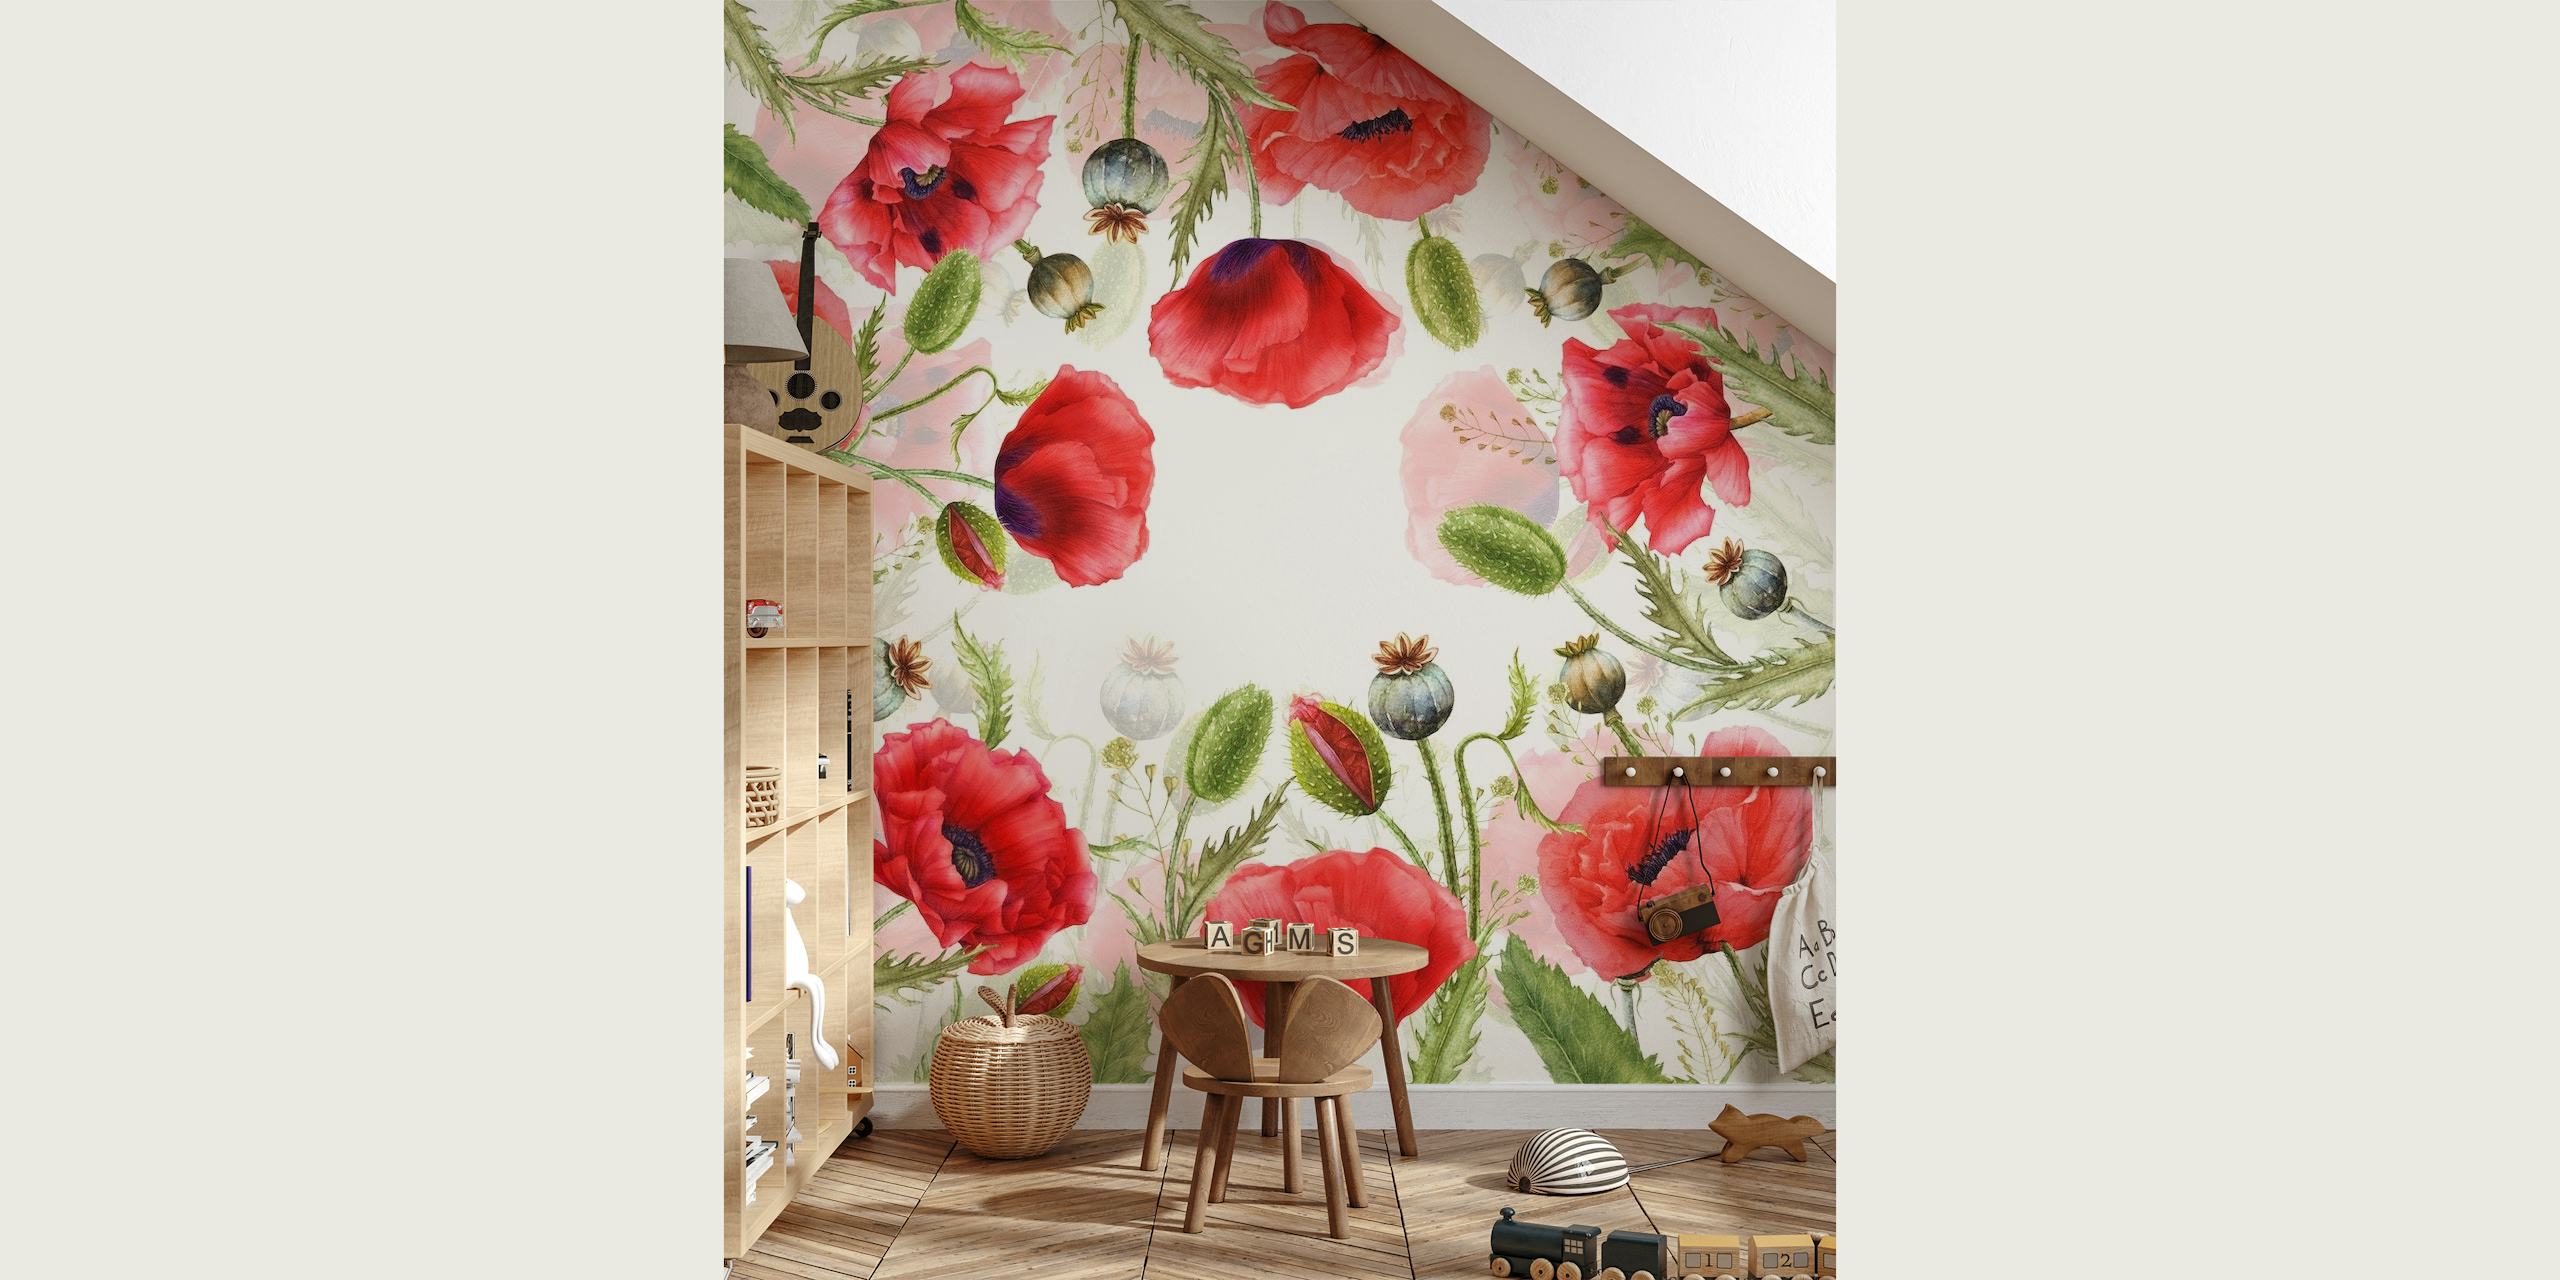 Wildflowers Poppy Meadow wallpaper